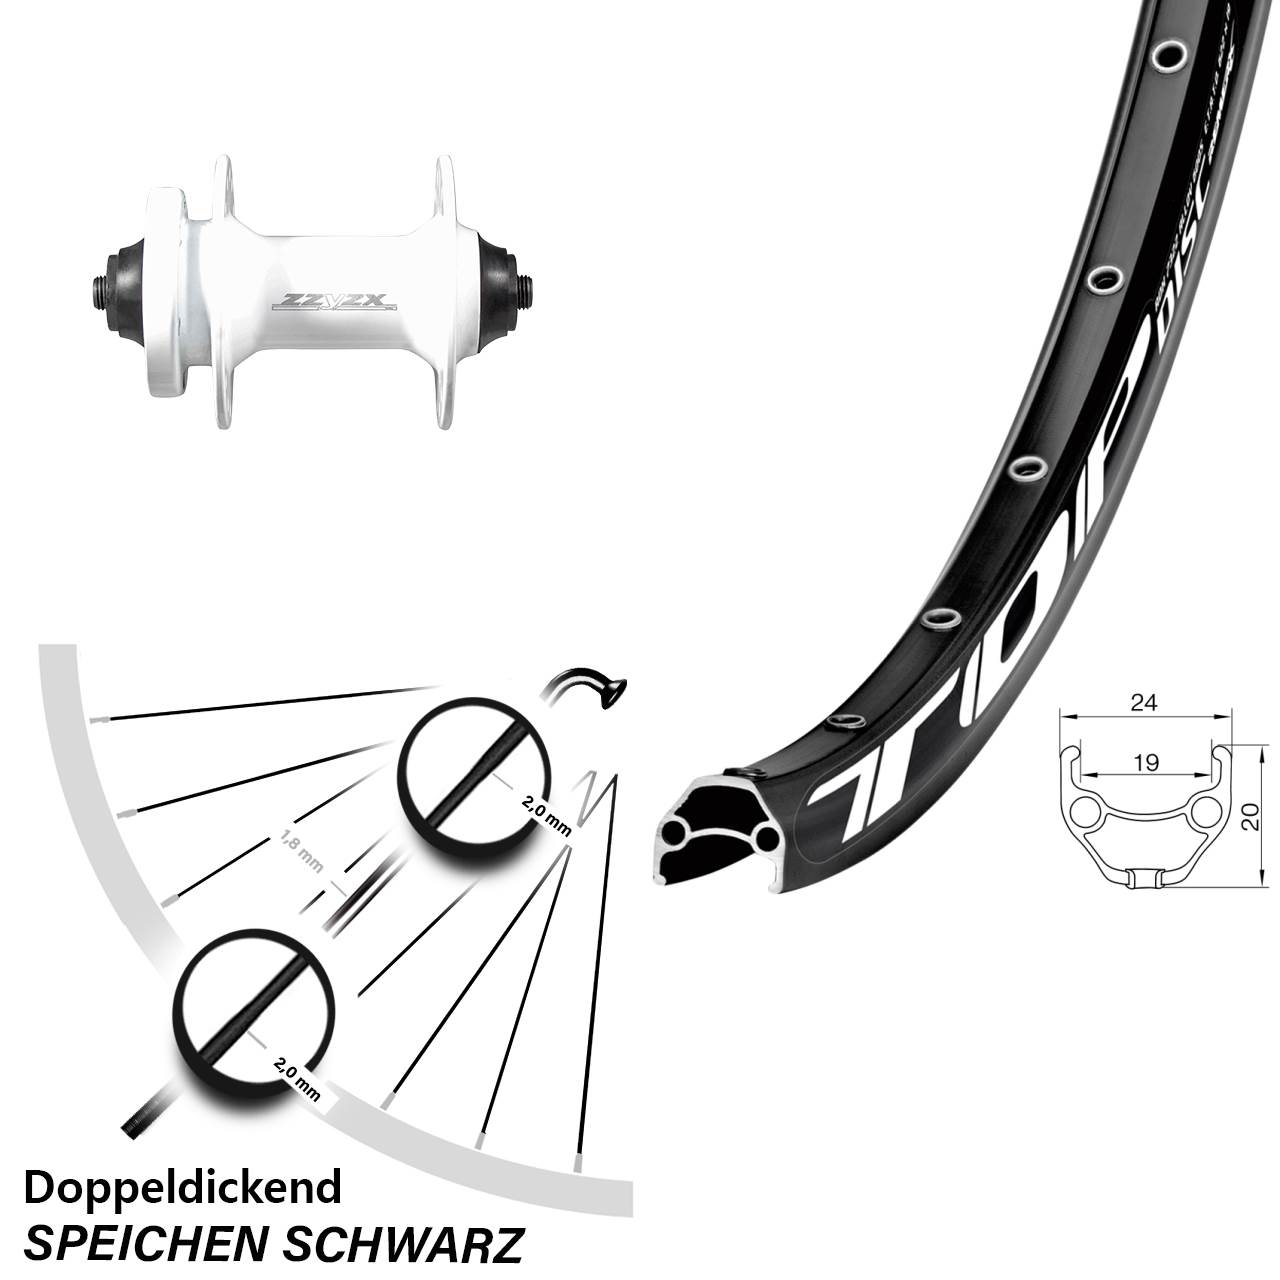 Formula ZZYZX weiss Vorderrad Remerx Disc 6-Loch Schnellspanner 28-29 Zoll